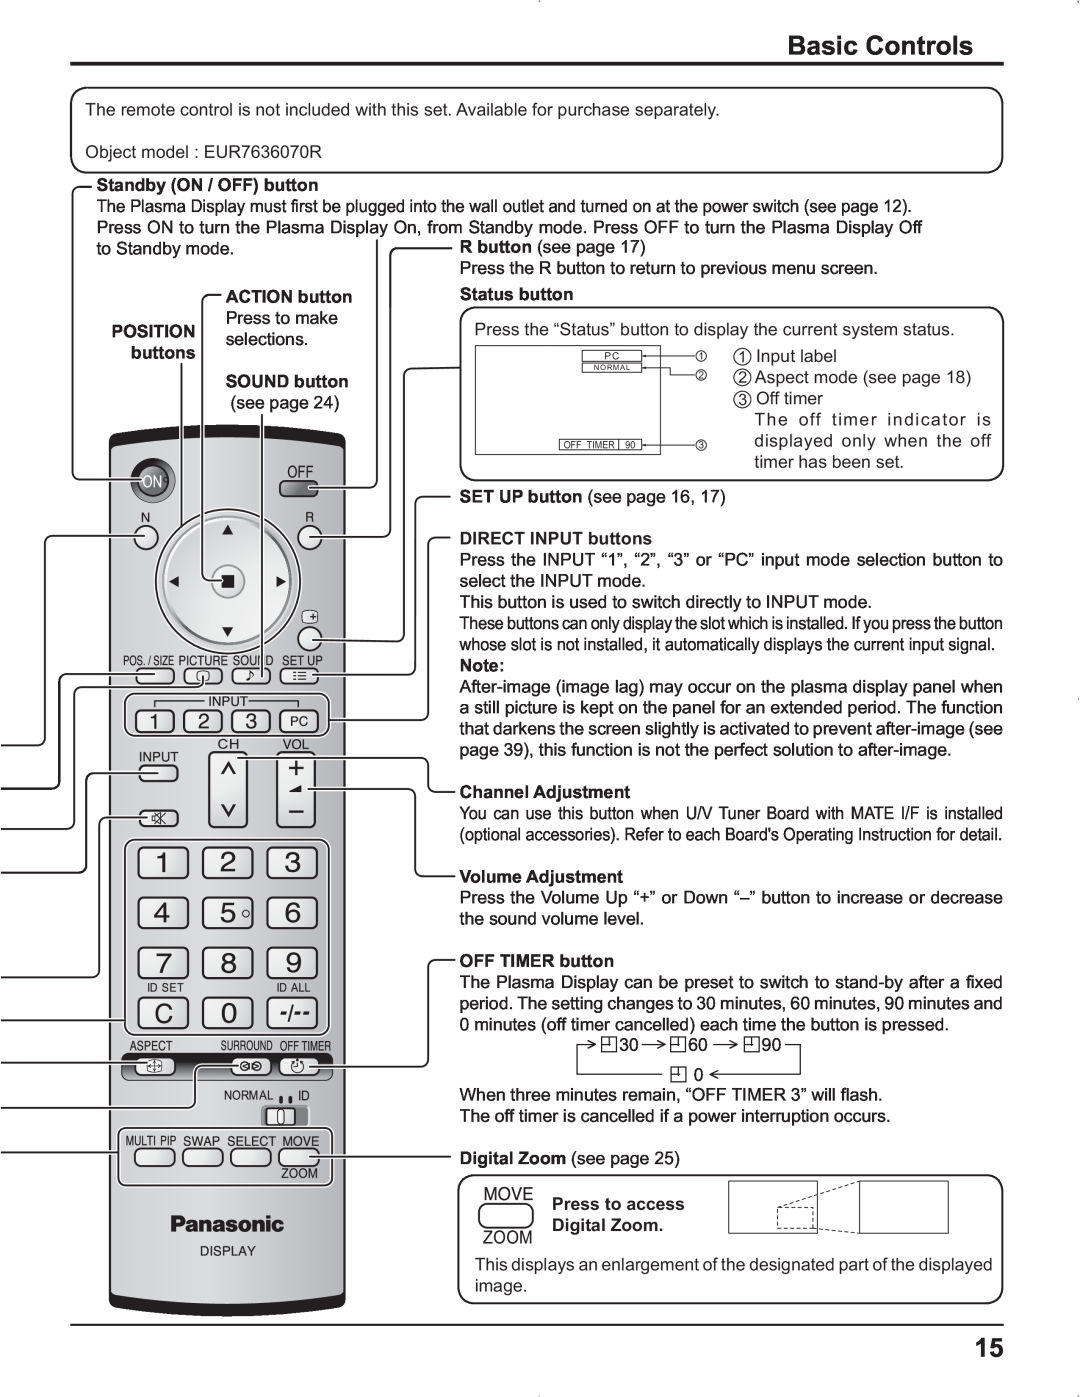 Panasonic TH-42PR9U, TH-37PR9U, TH-37PG9U, TH-42PG9U manual Basic Controls 